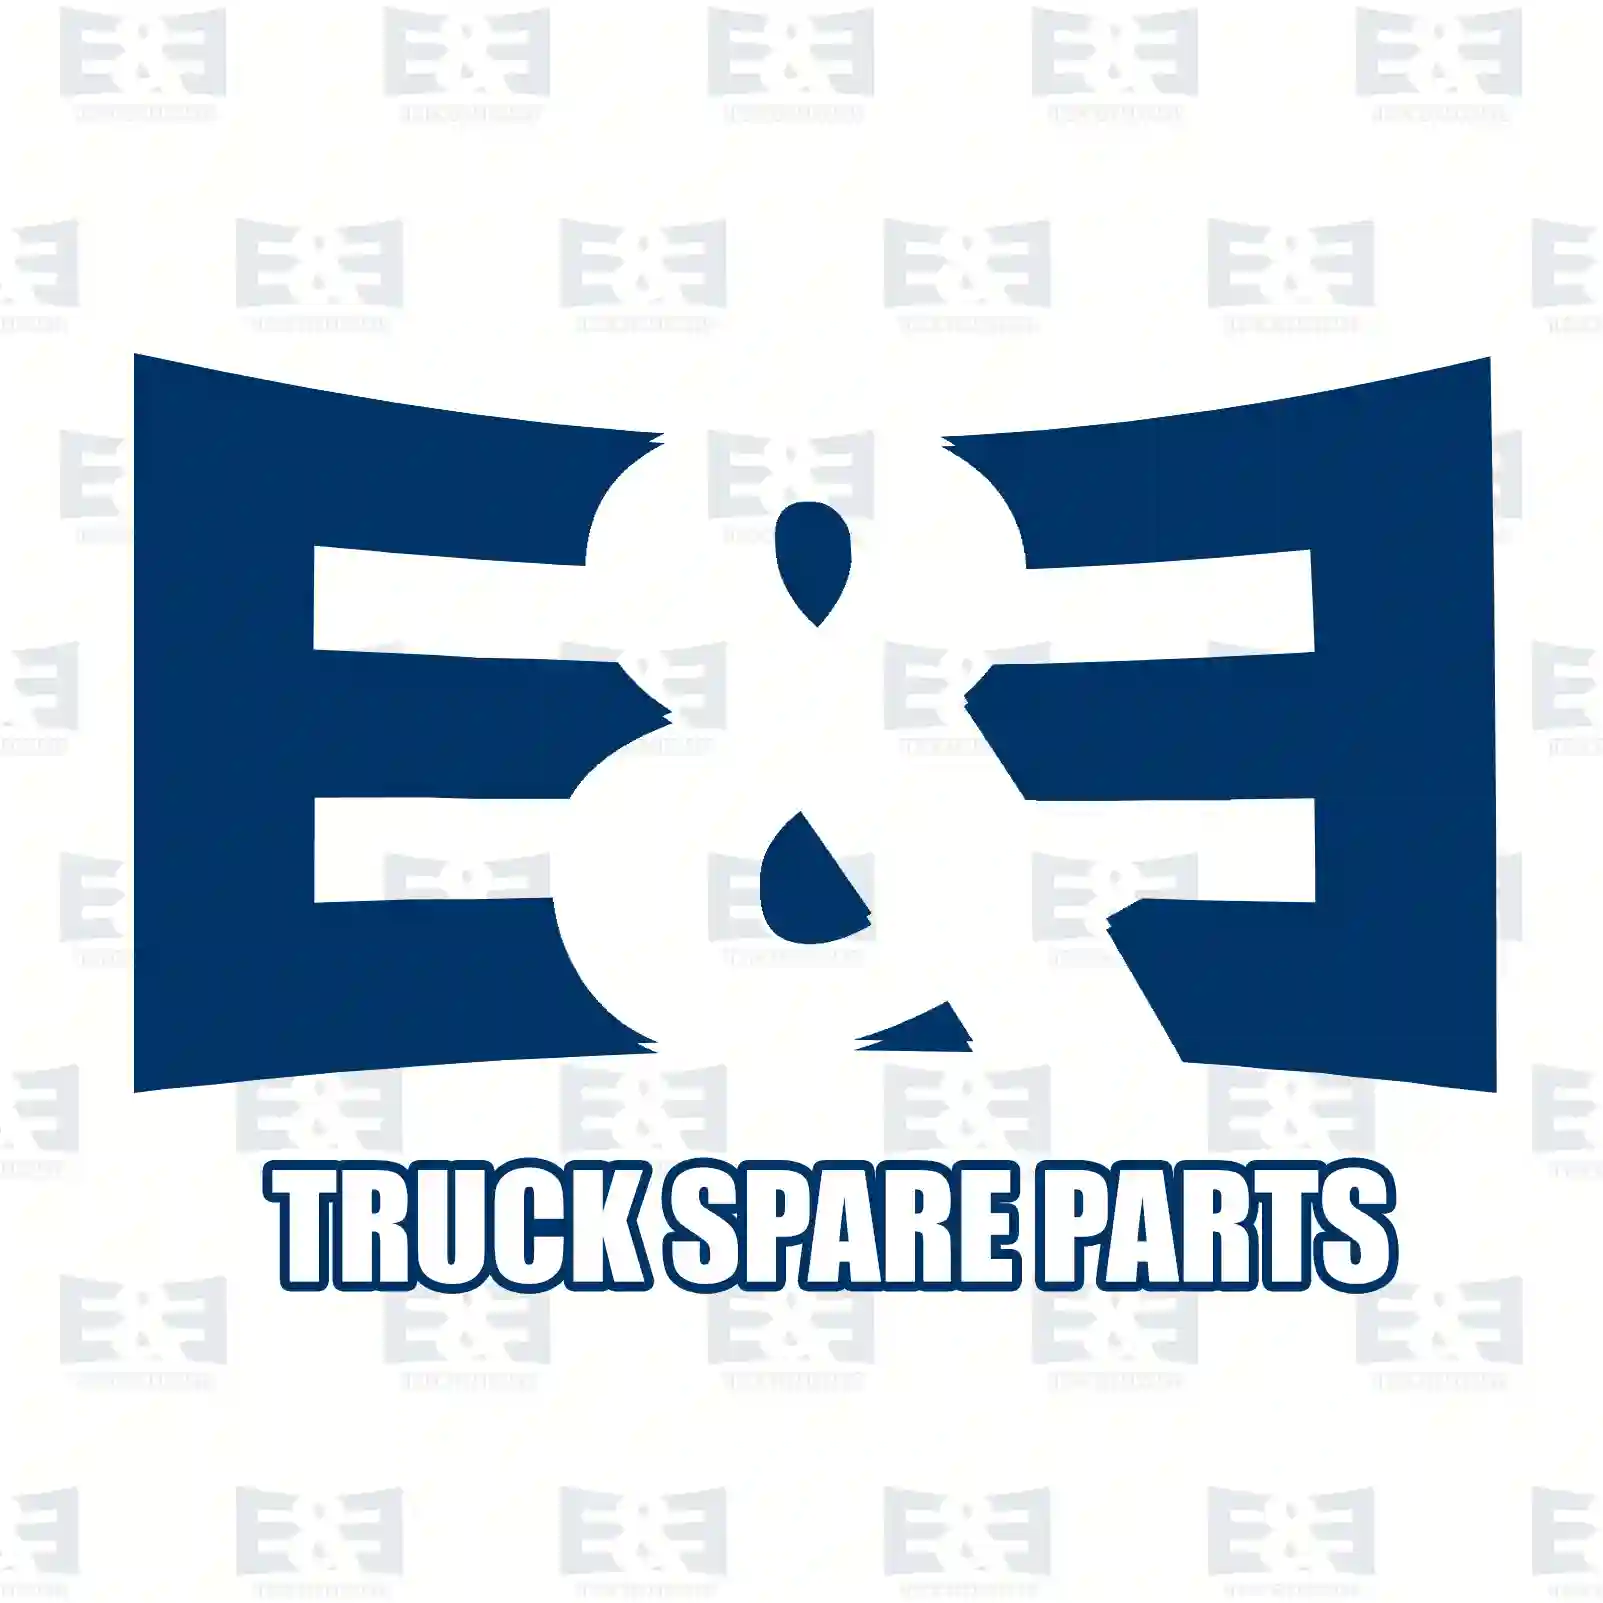 Cover, bumper, right, 2E2292922, 81416850096, 2V5853666 ||  2E2292922 E&E Truck Spare Parts | Truck Spare Parts, Auotomotive Spare Parts Cover, bumper, right, 2E2292922, 81416850096, 2V5853666 ||  2E2292922 E&E Truck Spare Parts | Truck Spare Parts, Auotomotive Spare Parts